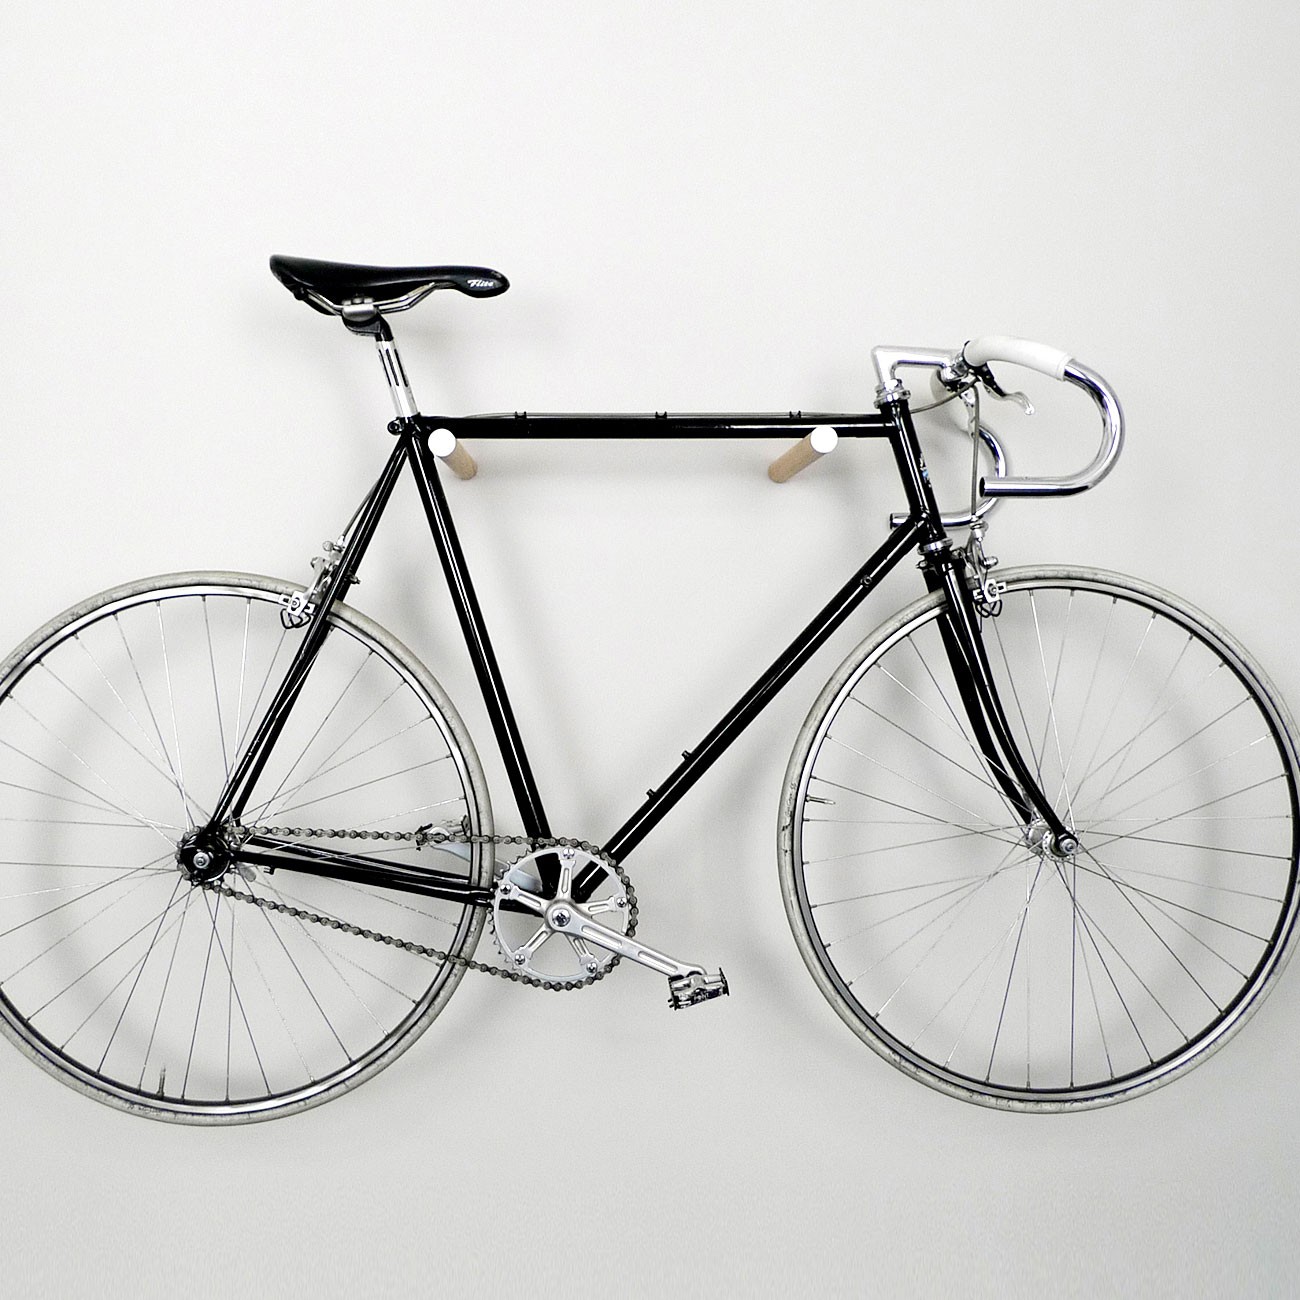 Wooden bike hook minimal and simple